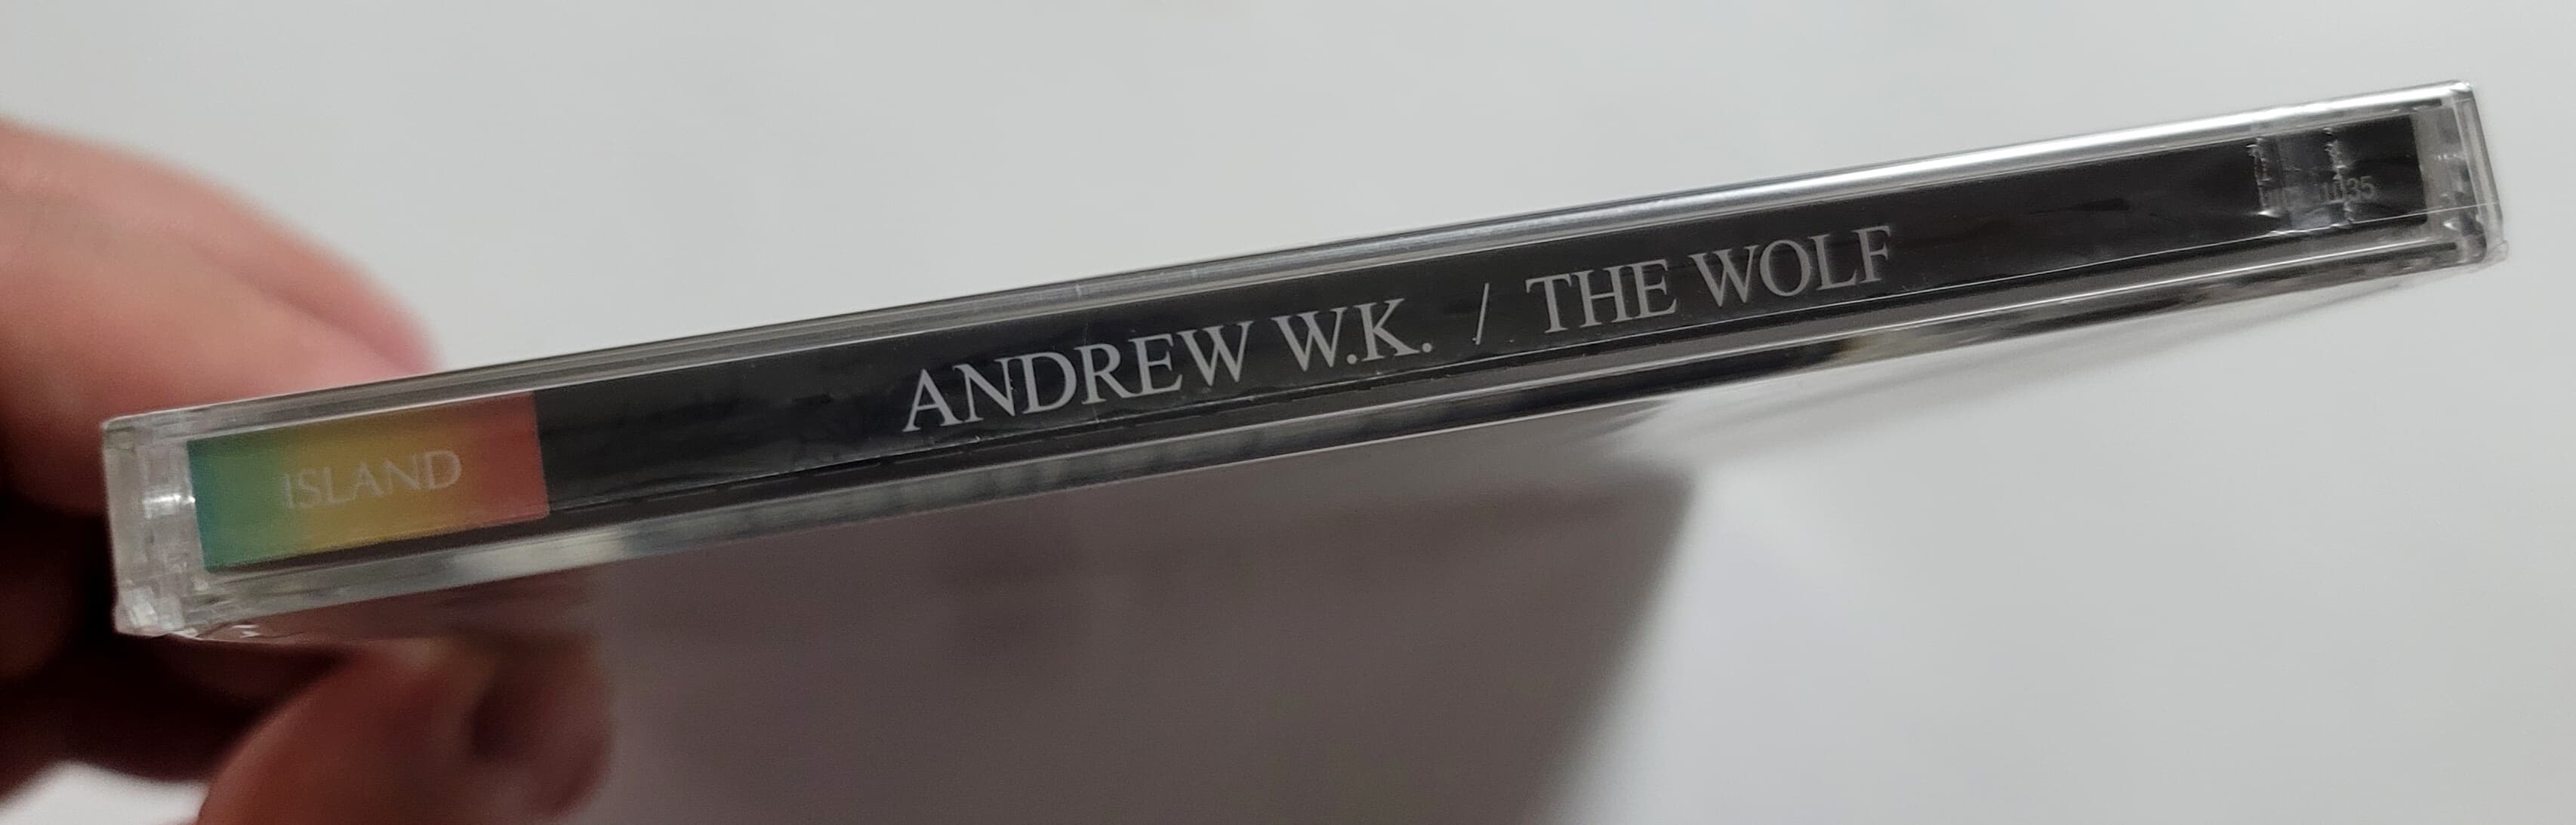 (미개봉 일본반) Andrew W.K. - The Wolf